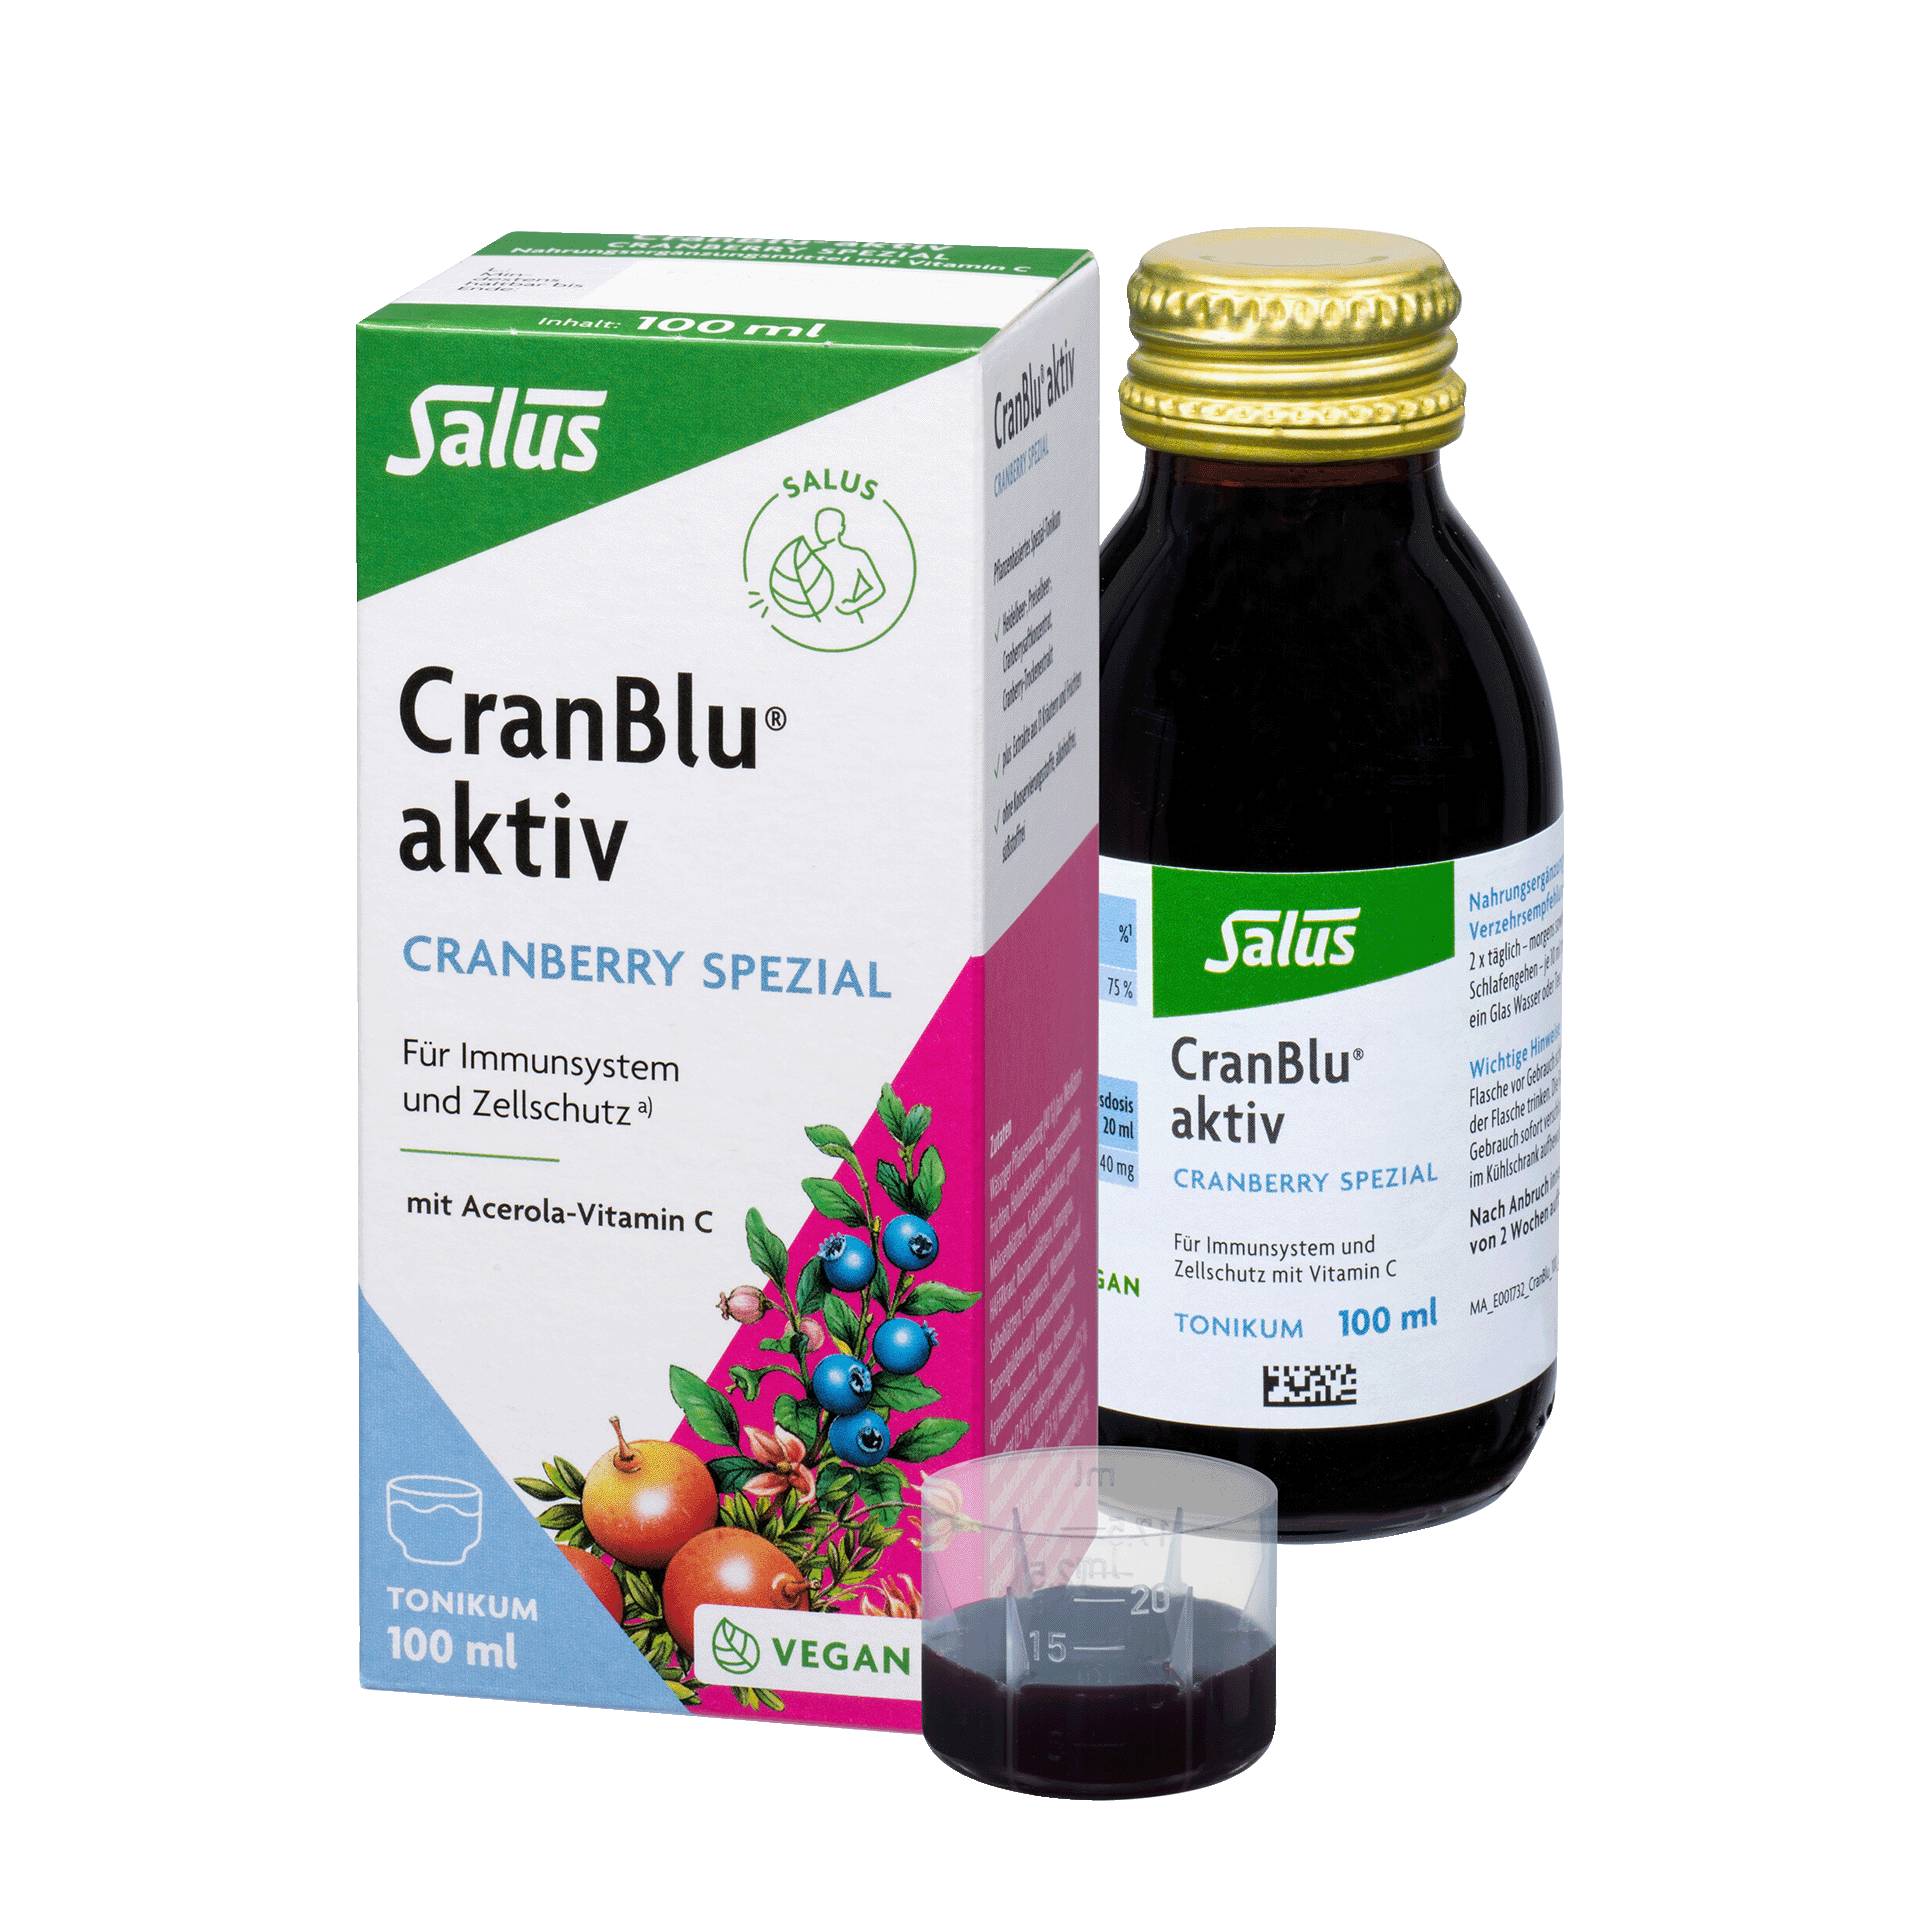 CranBlu aktiv 100 ml - Cranberry-Spezial-Tonikum mit Acerola-Vitamin C - vegan - Salus von Salus